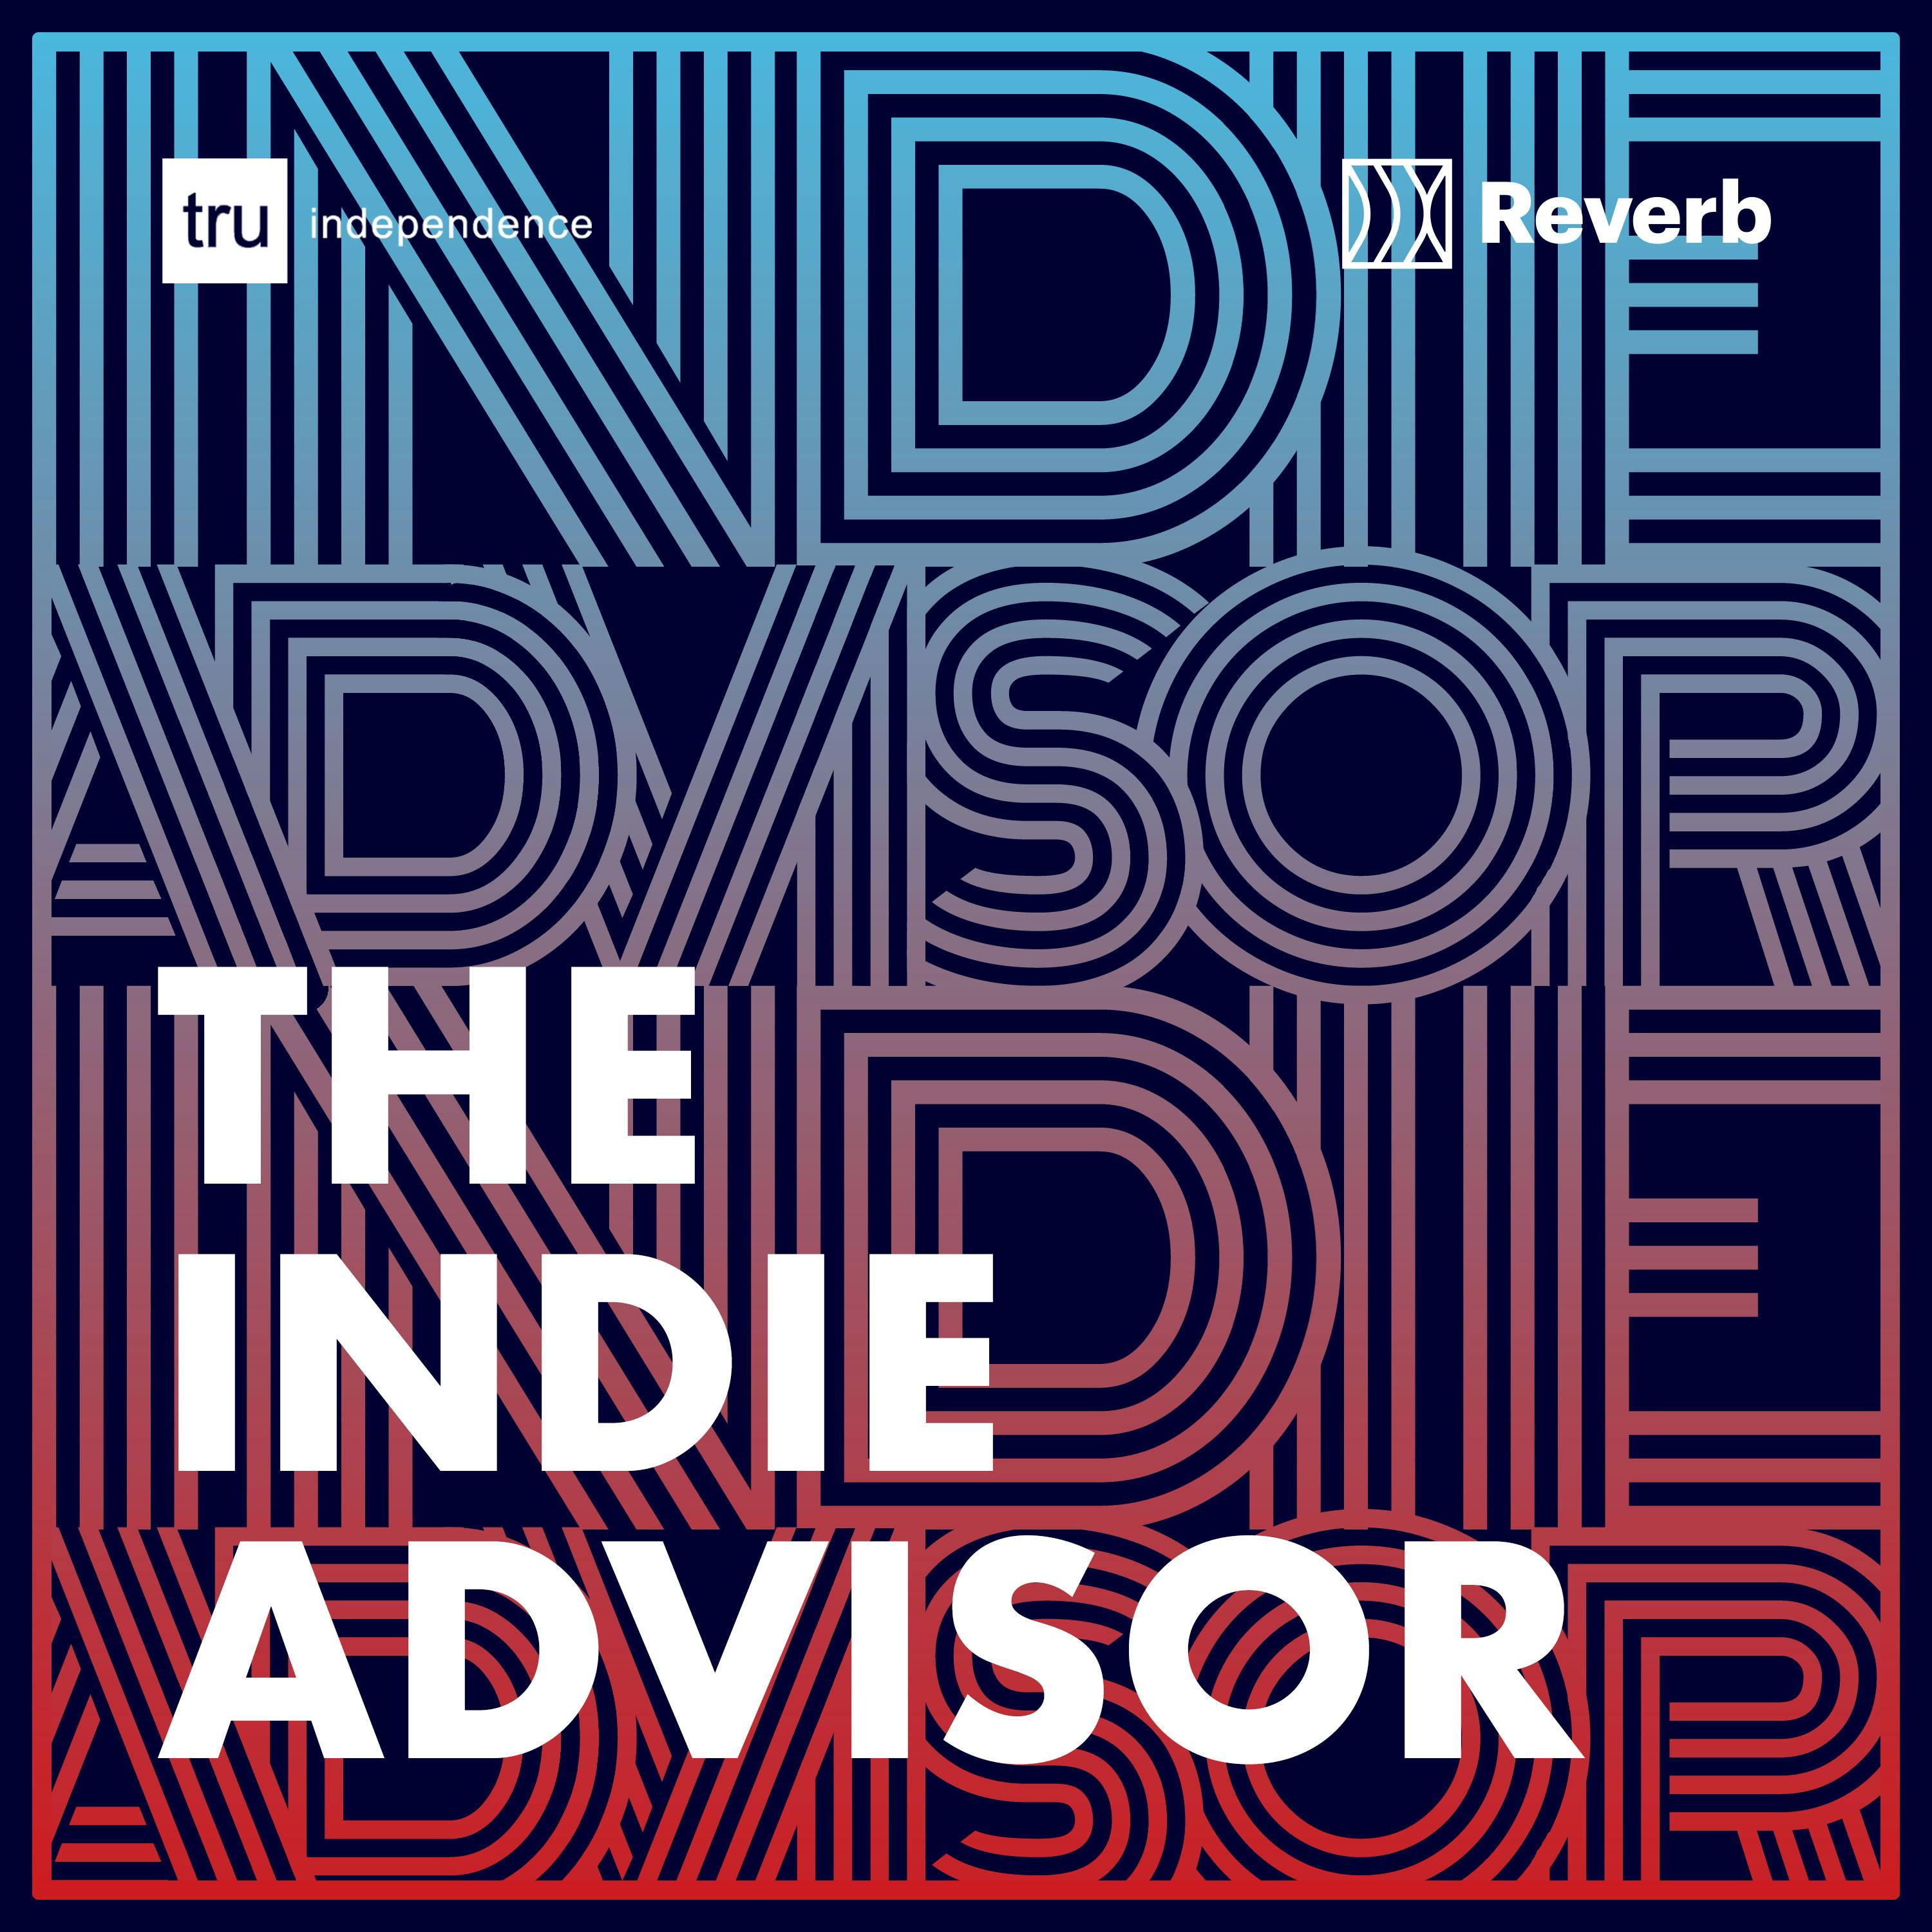 The Indie Advisor Album Art